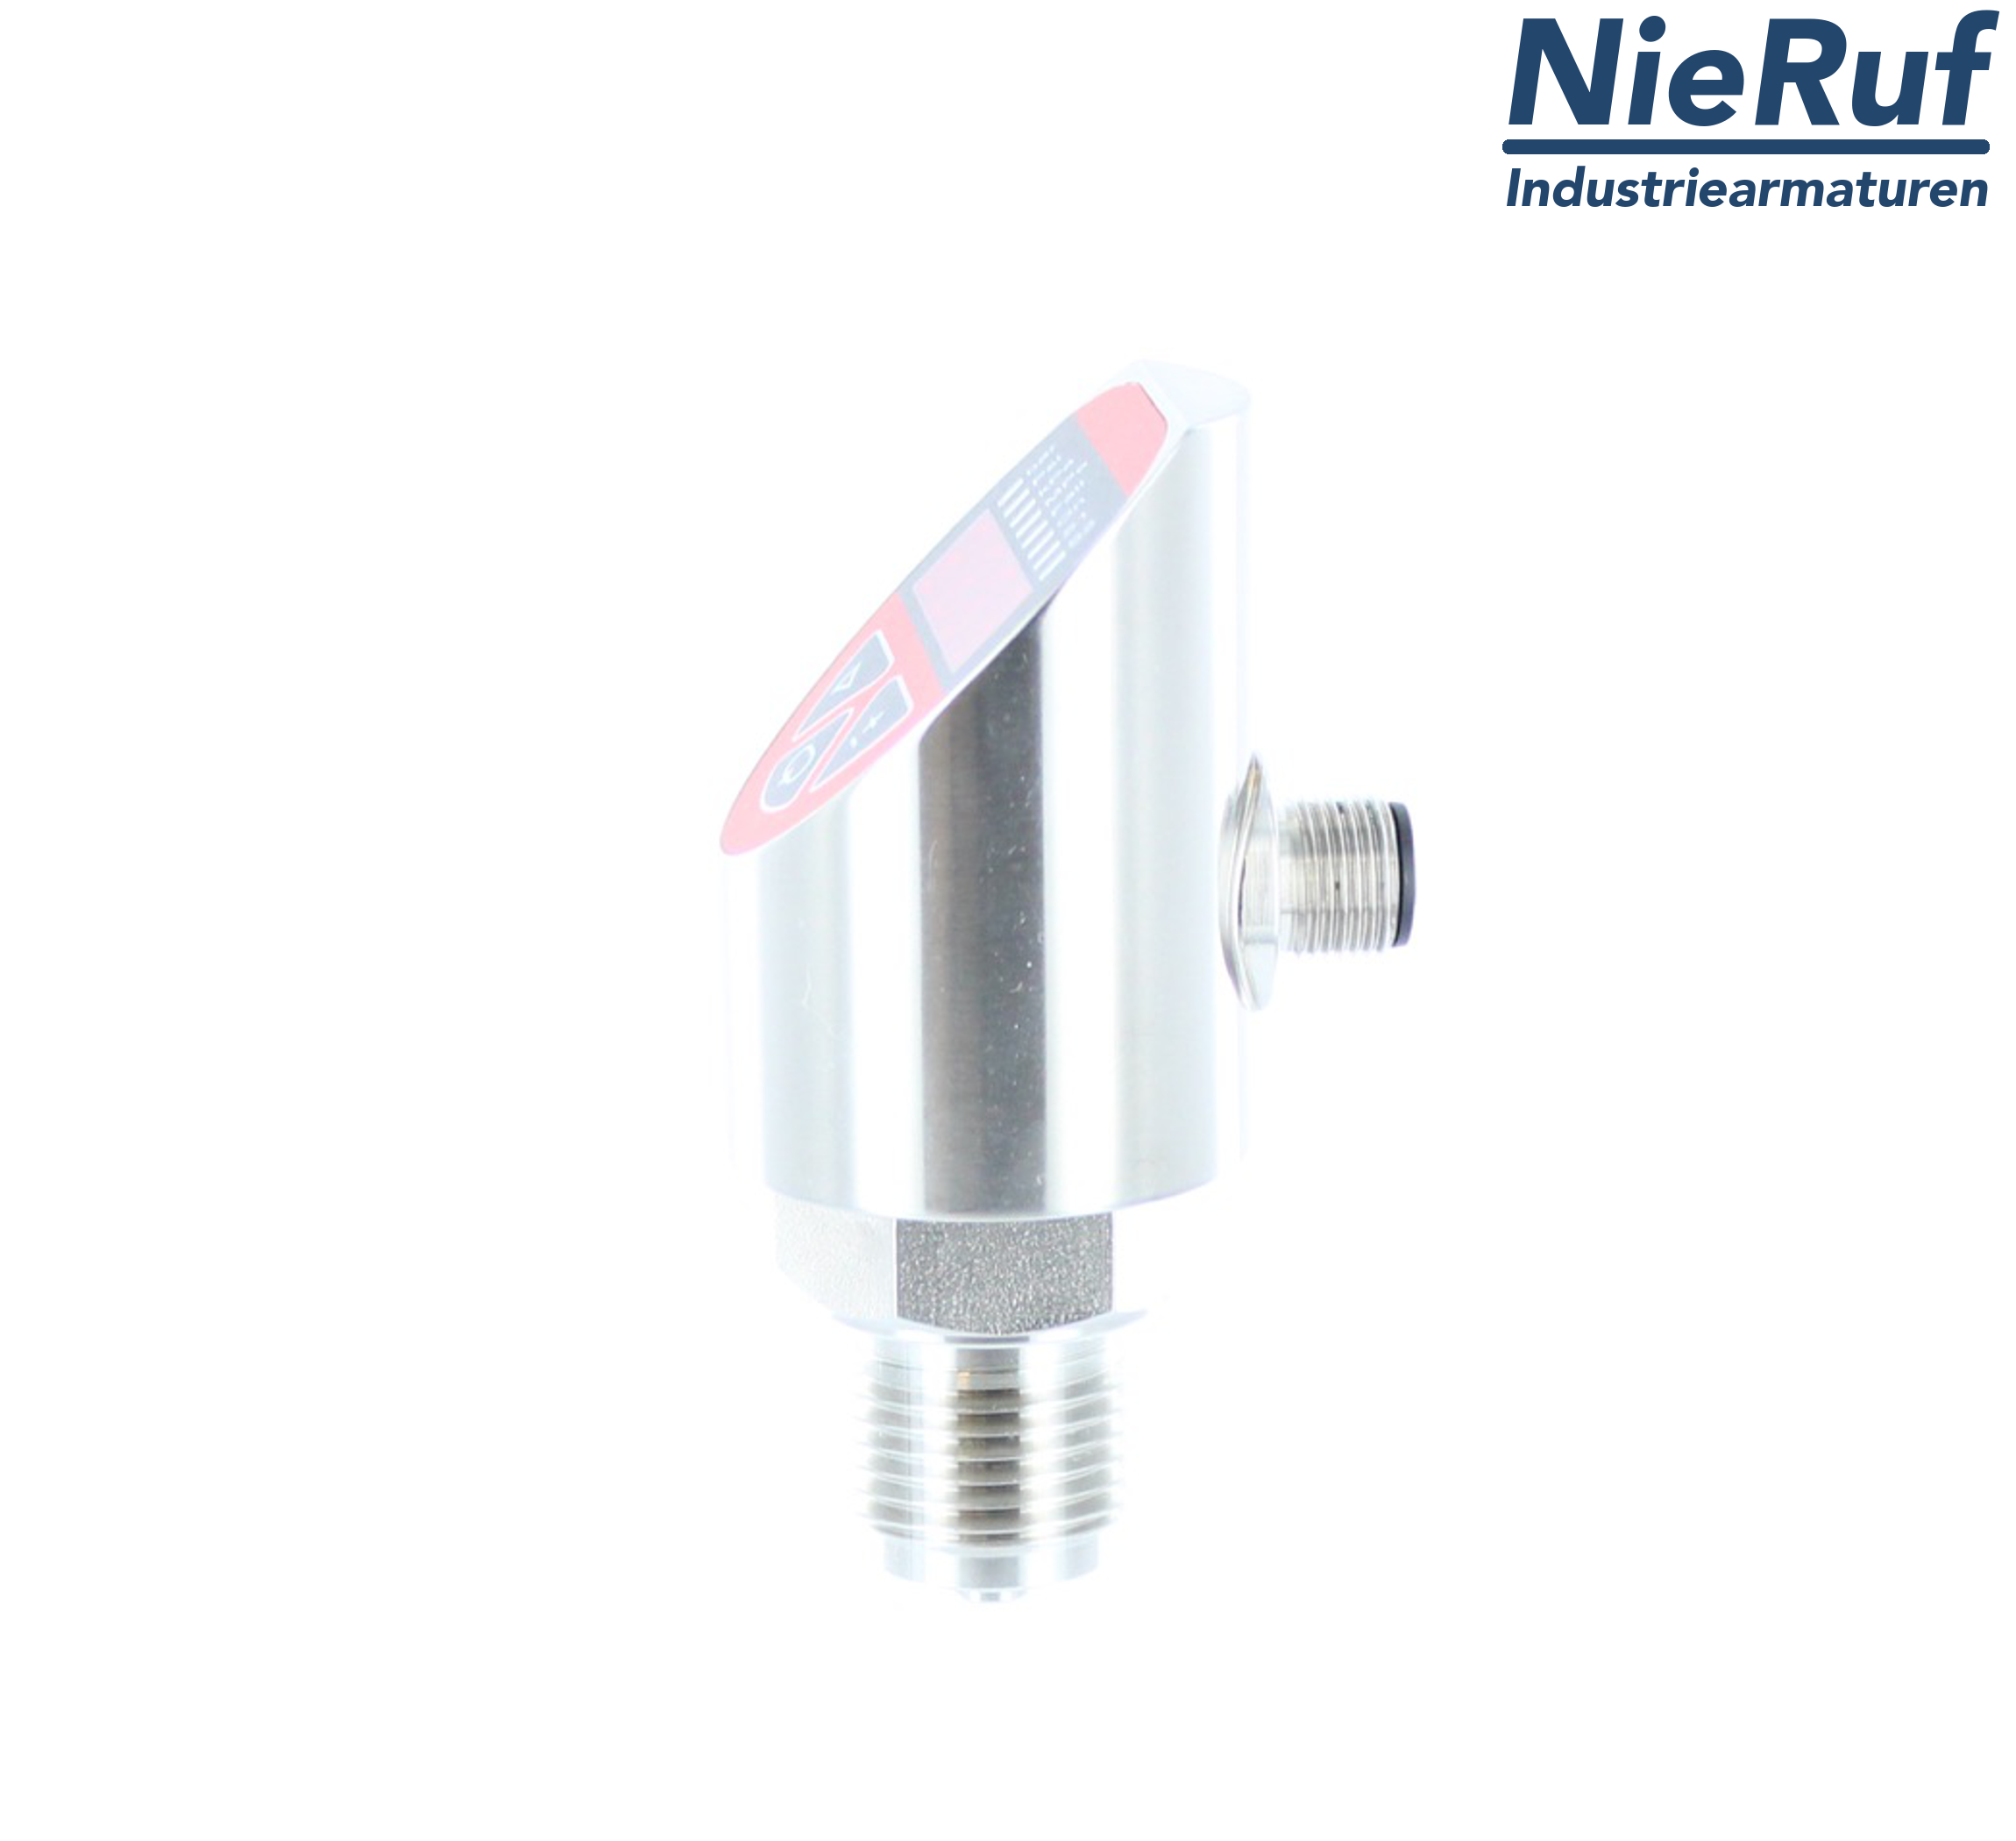 digital pressure sensor G 1/2" B IB 4-wire: 1xPNP, 1x4 - 20mA, Desina FPM 0,0 - 60,0 bar